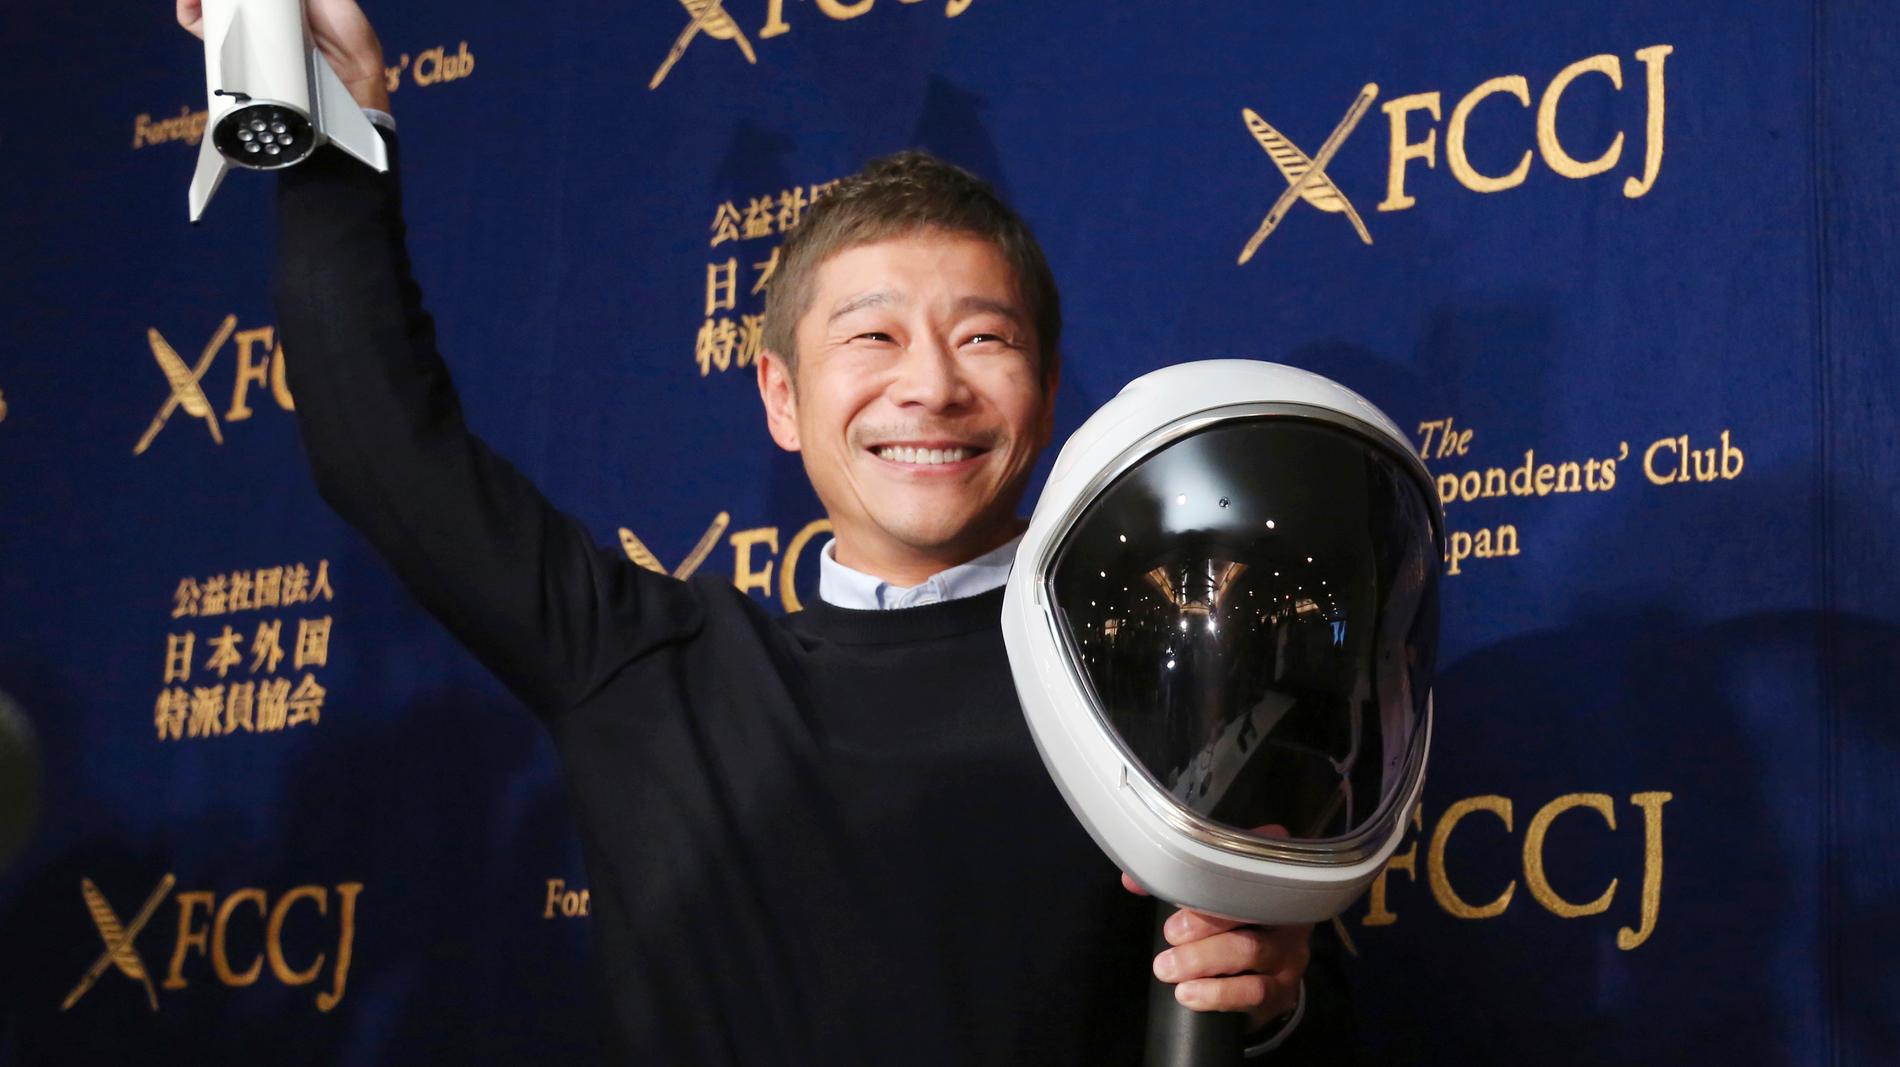 Yusaku Maezawa i samband med att han i oktober 2018 meddelade att han planerar att resa runt månen i Elon Musks raketföretag Space X regi.